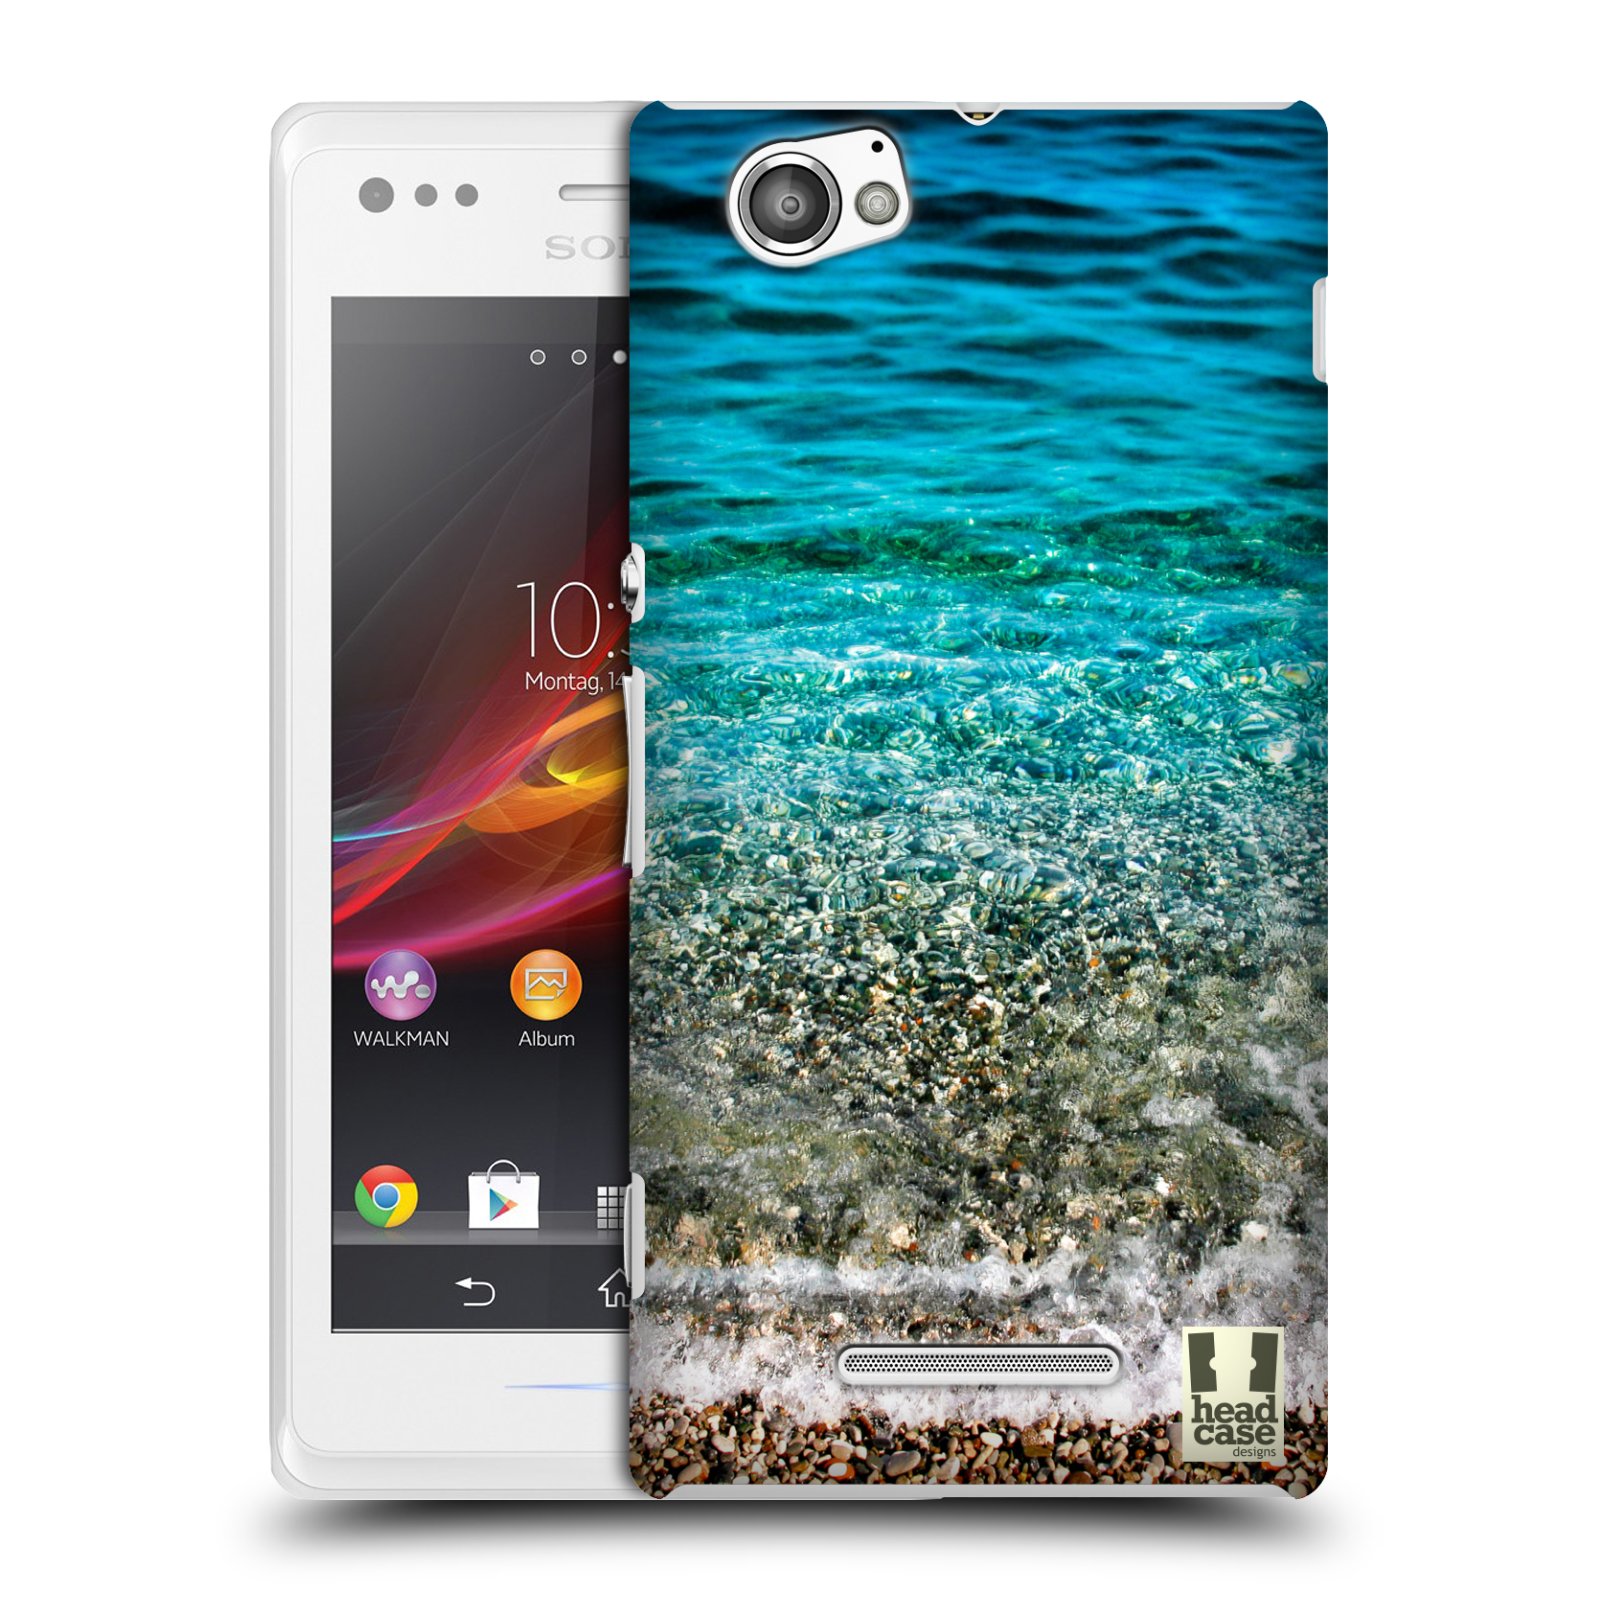 HEAD CASE plastový obal na mobil Sony Xperia M vzor Pláže a Moře PRŮZRAČNÉ MOŘE S OBLÁZKY